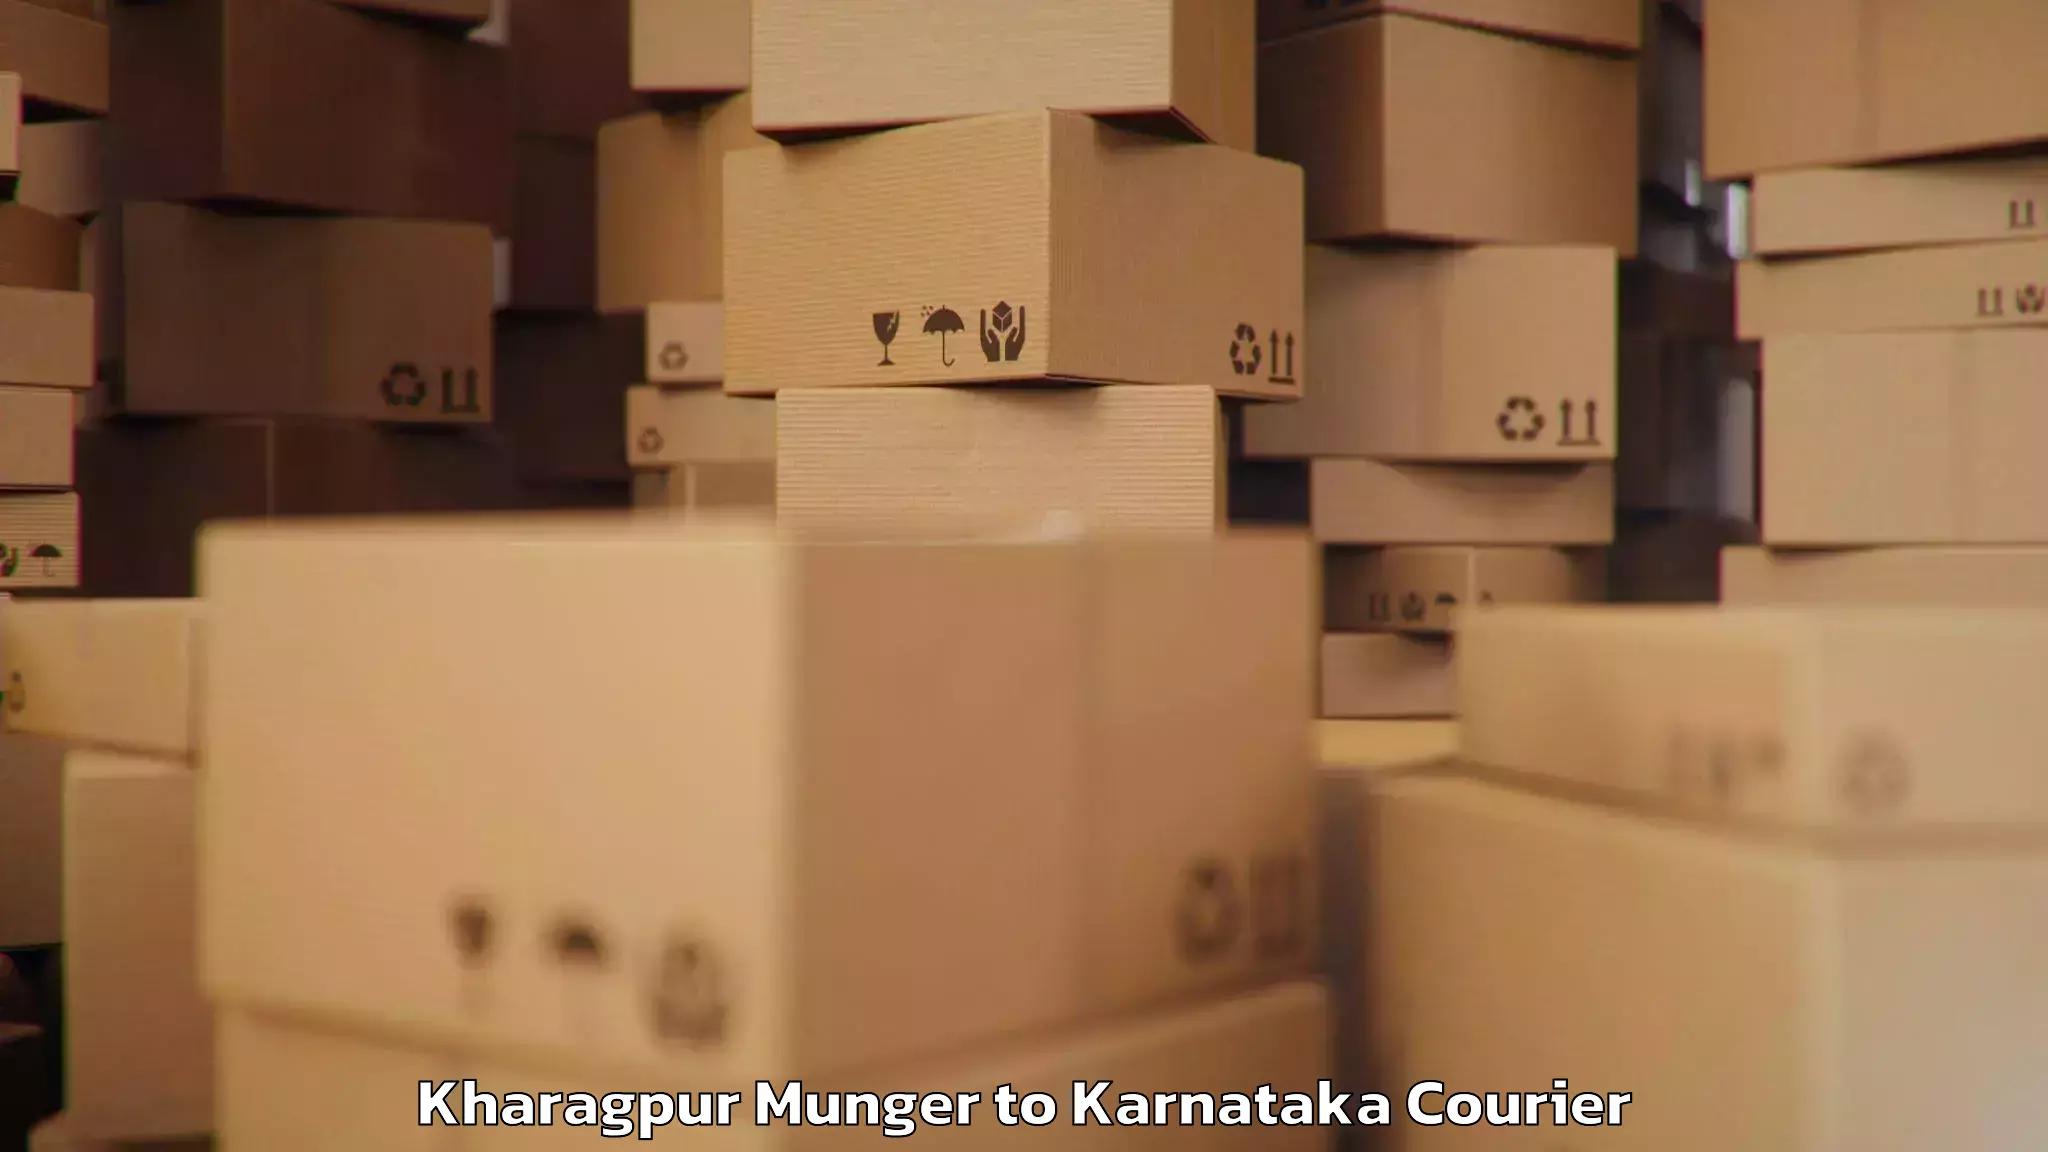 Luggage transport consultancy Kharagpur Munger to Uchila